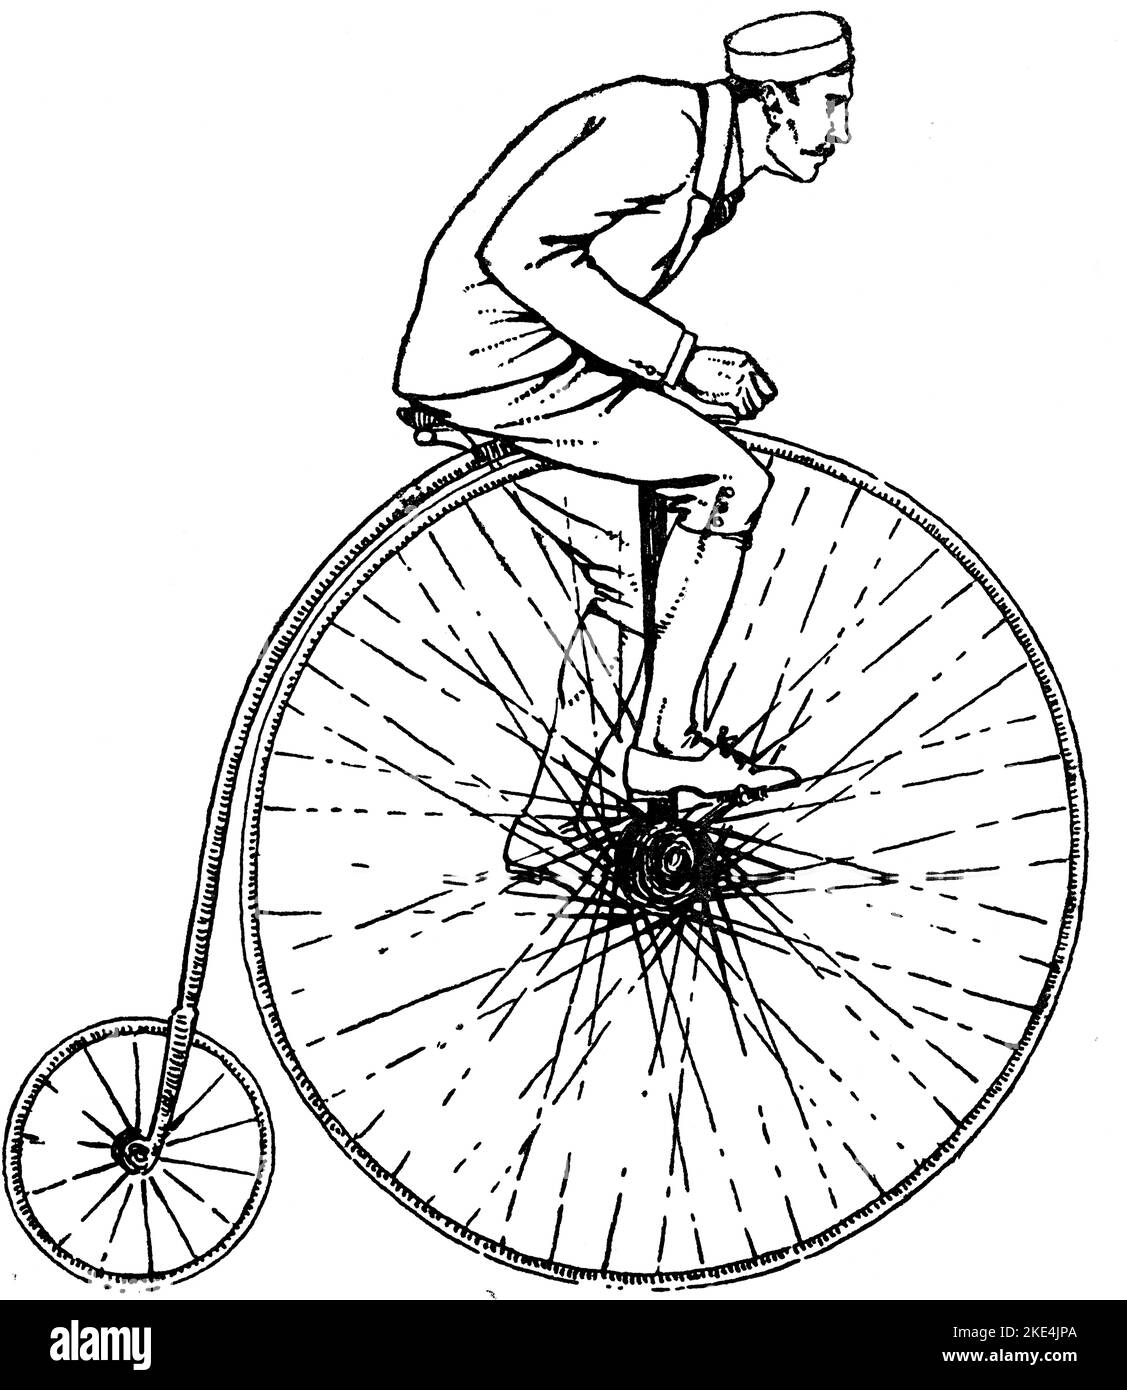 Un Penny-Farthing di 1884 (1942). Il penny-farthing, anche conosciuto come ruota alta, ruota alta o ordinaria, è un tipo iniziale di bicicletta. Era popolare negli anni '1870s e '1880s, con la sua grande ruota anteriore che offre velocità elevate e comfort. Divenne obsoleto alla fine degli anni '1880s con lo sviluppo di biciclette moderne. Foto Stock